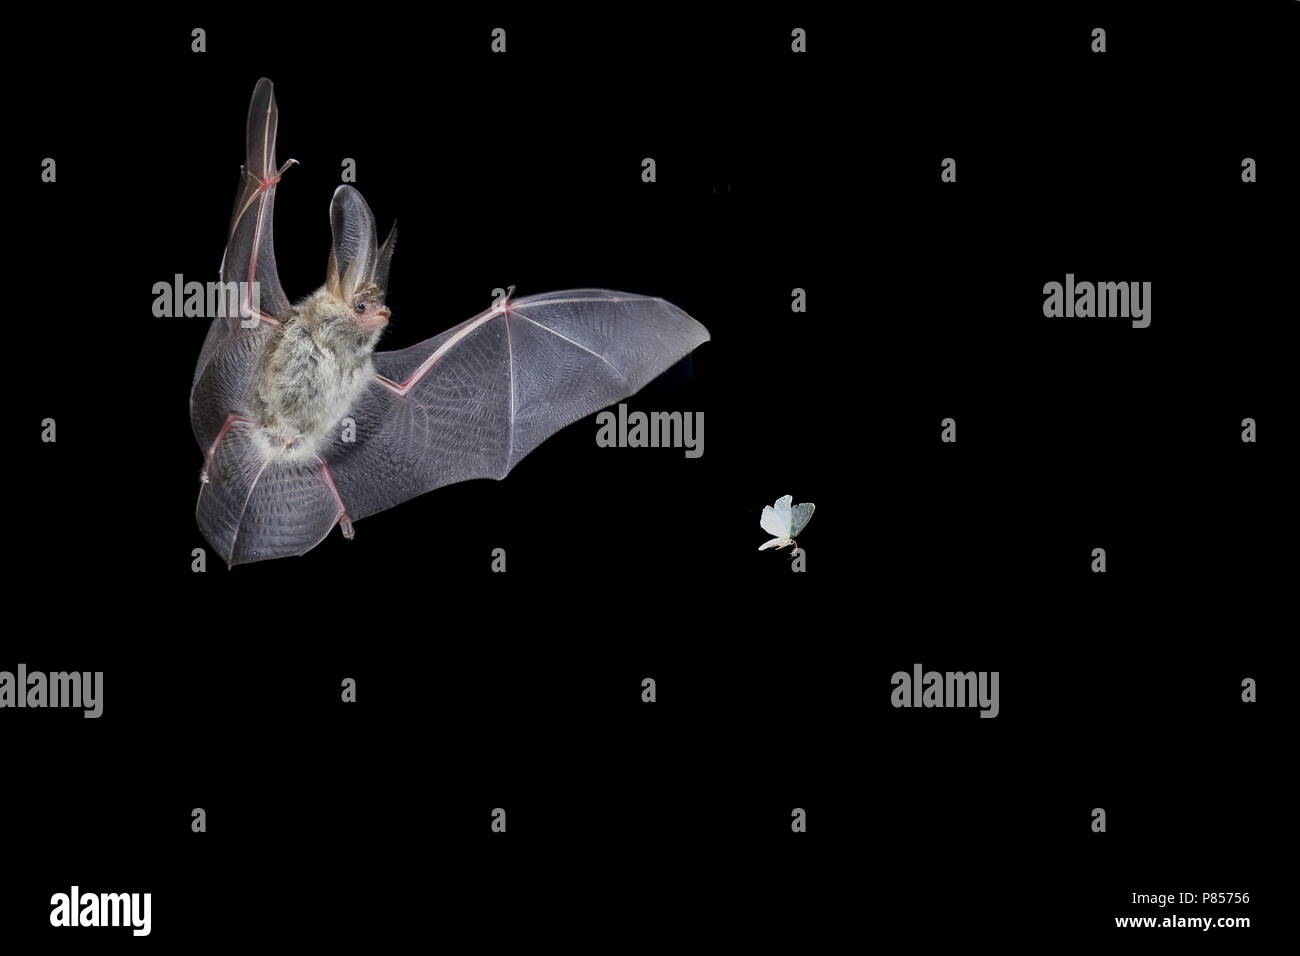 Gewone grootoorvleermuis jagend op mot; Brown long-eared bat hunting a Moth Stock Photo